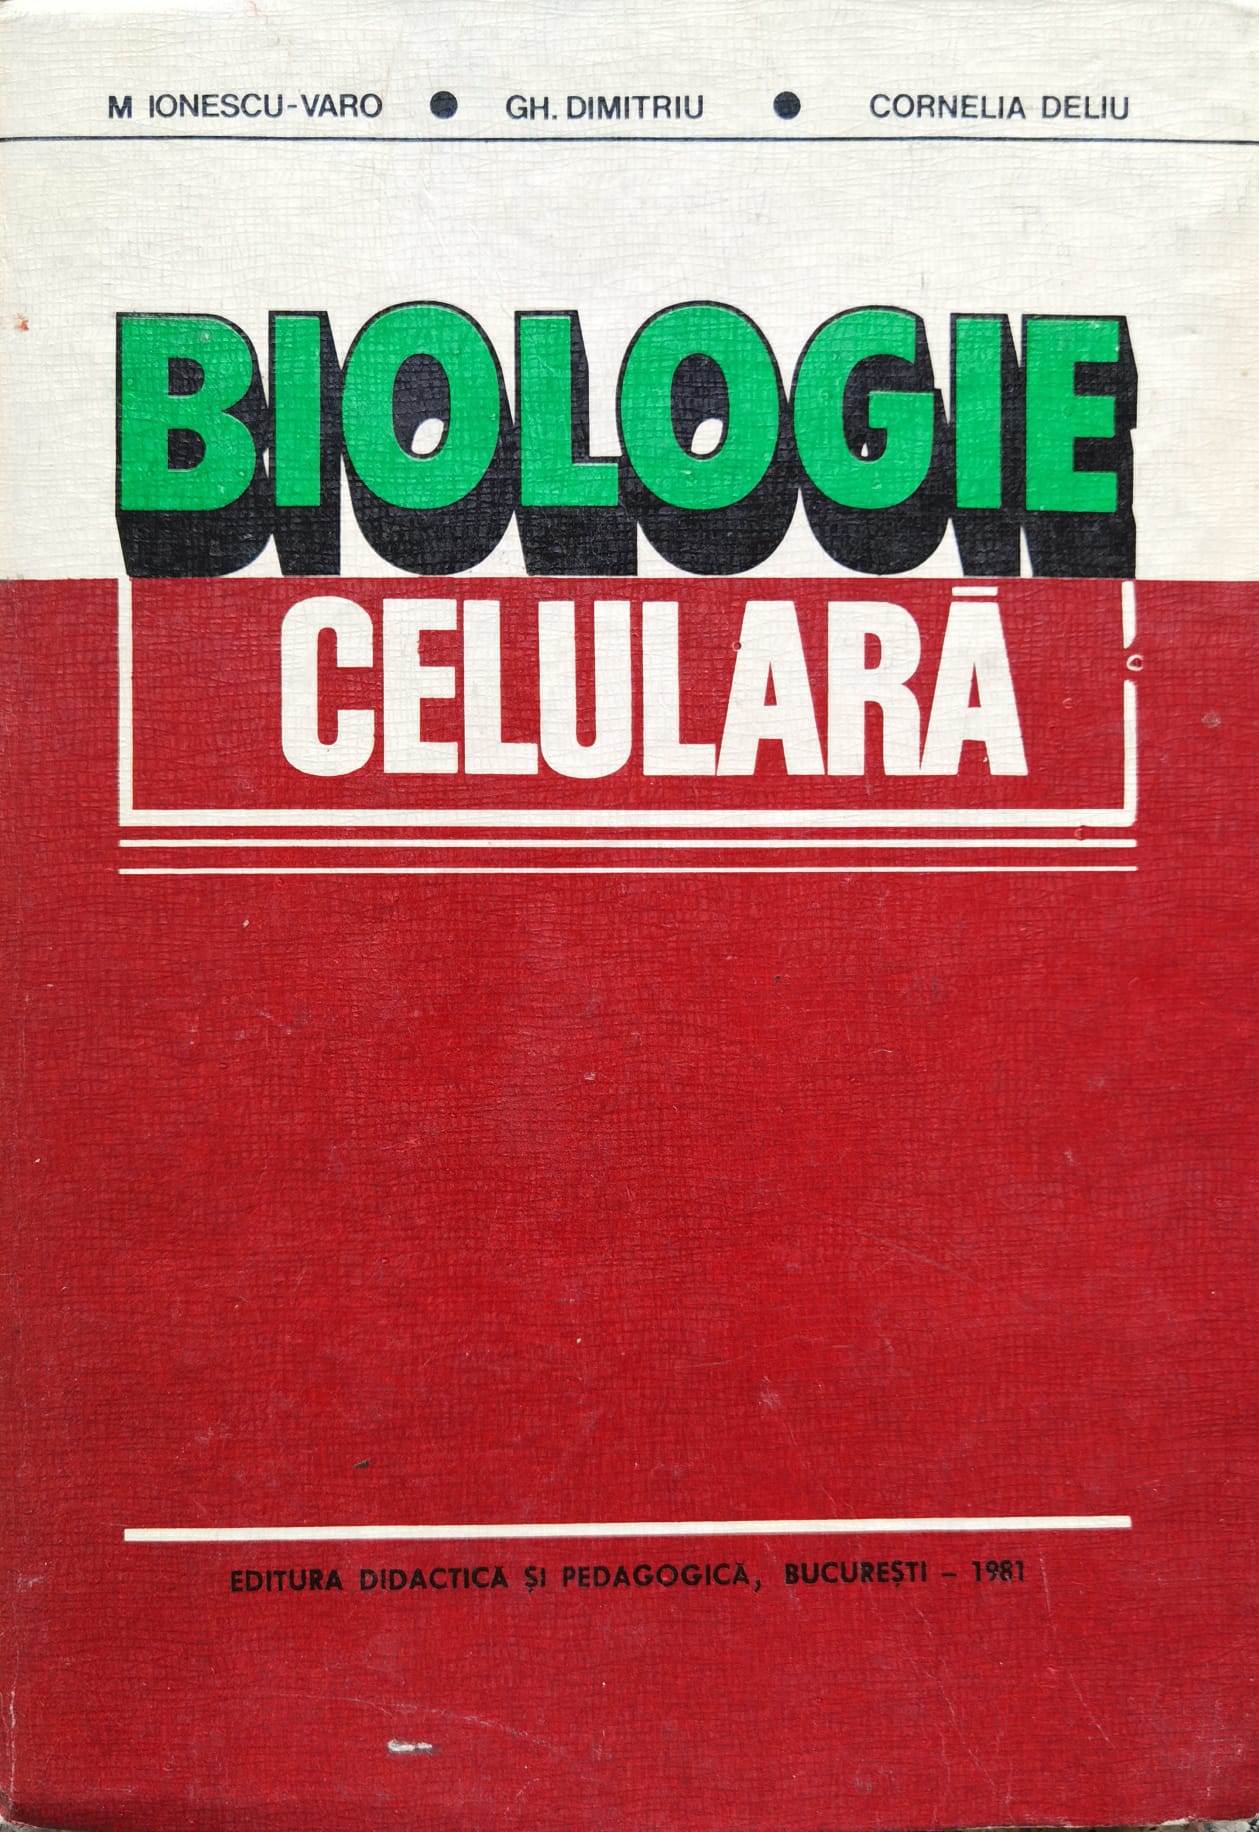 biologie celulara                                                                                    m. ionescu-varo gh. dimitriu c. deliu                                                               